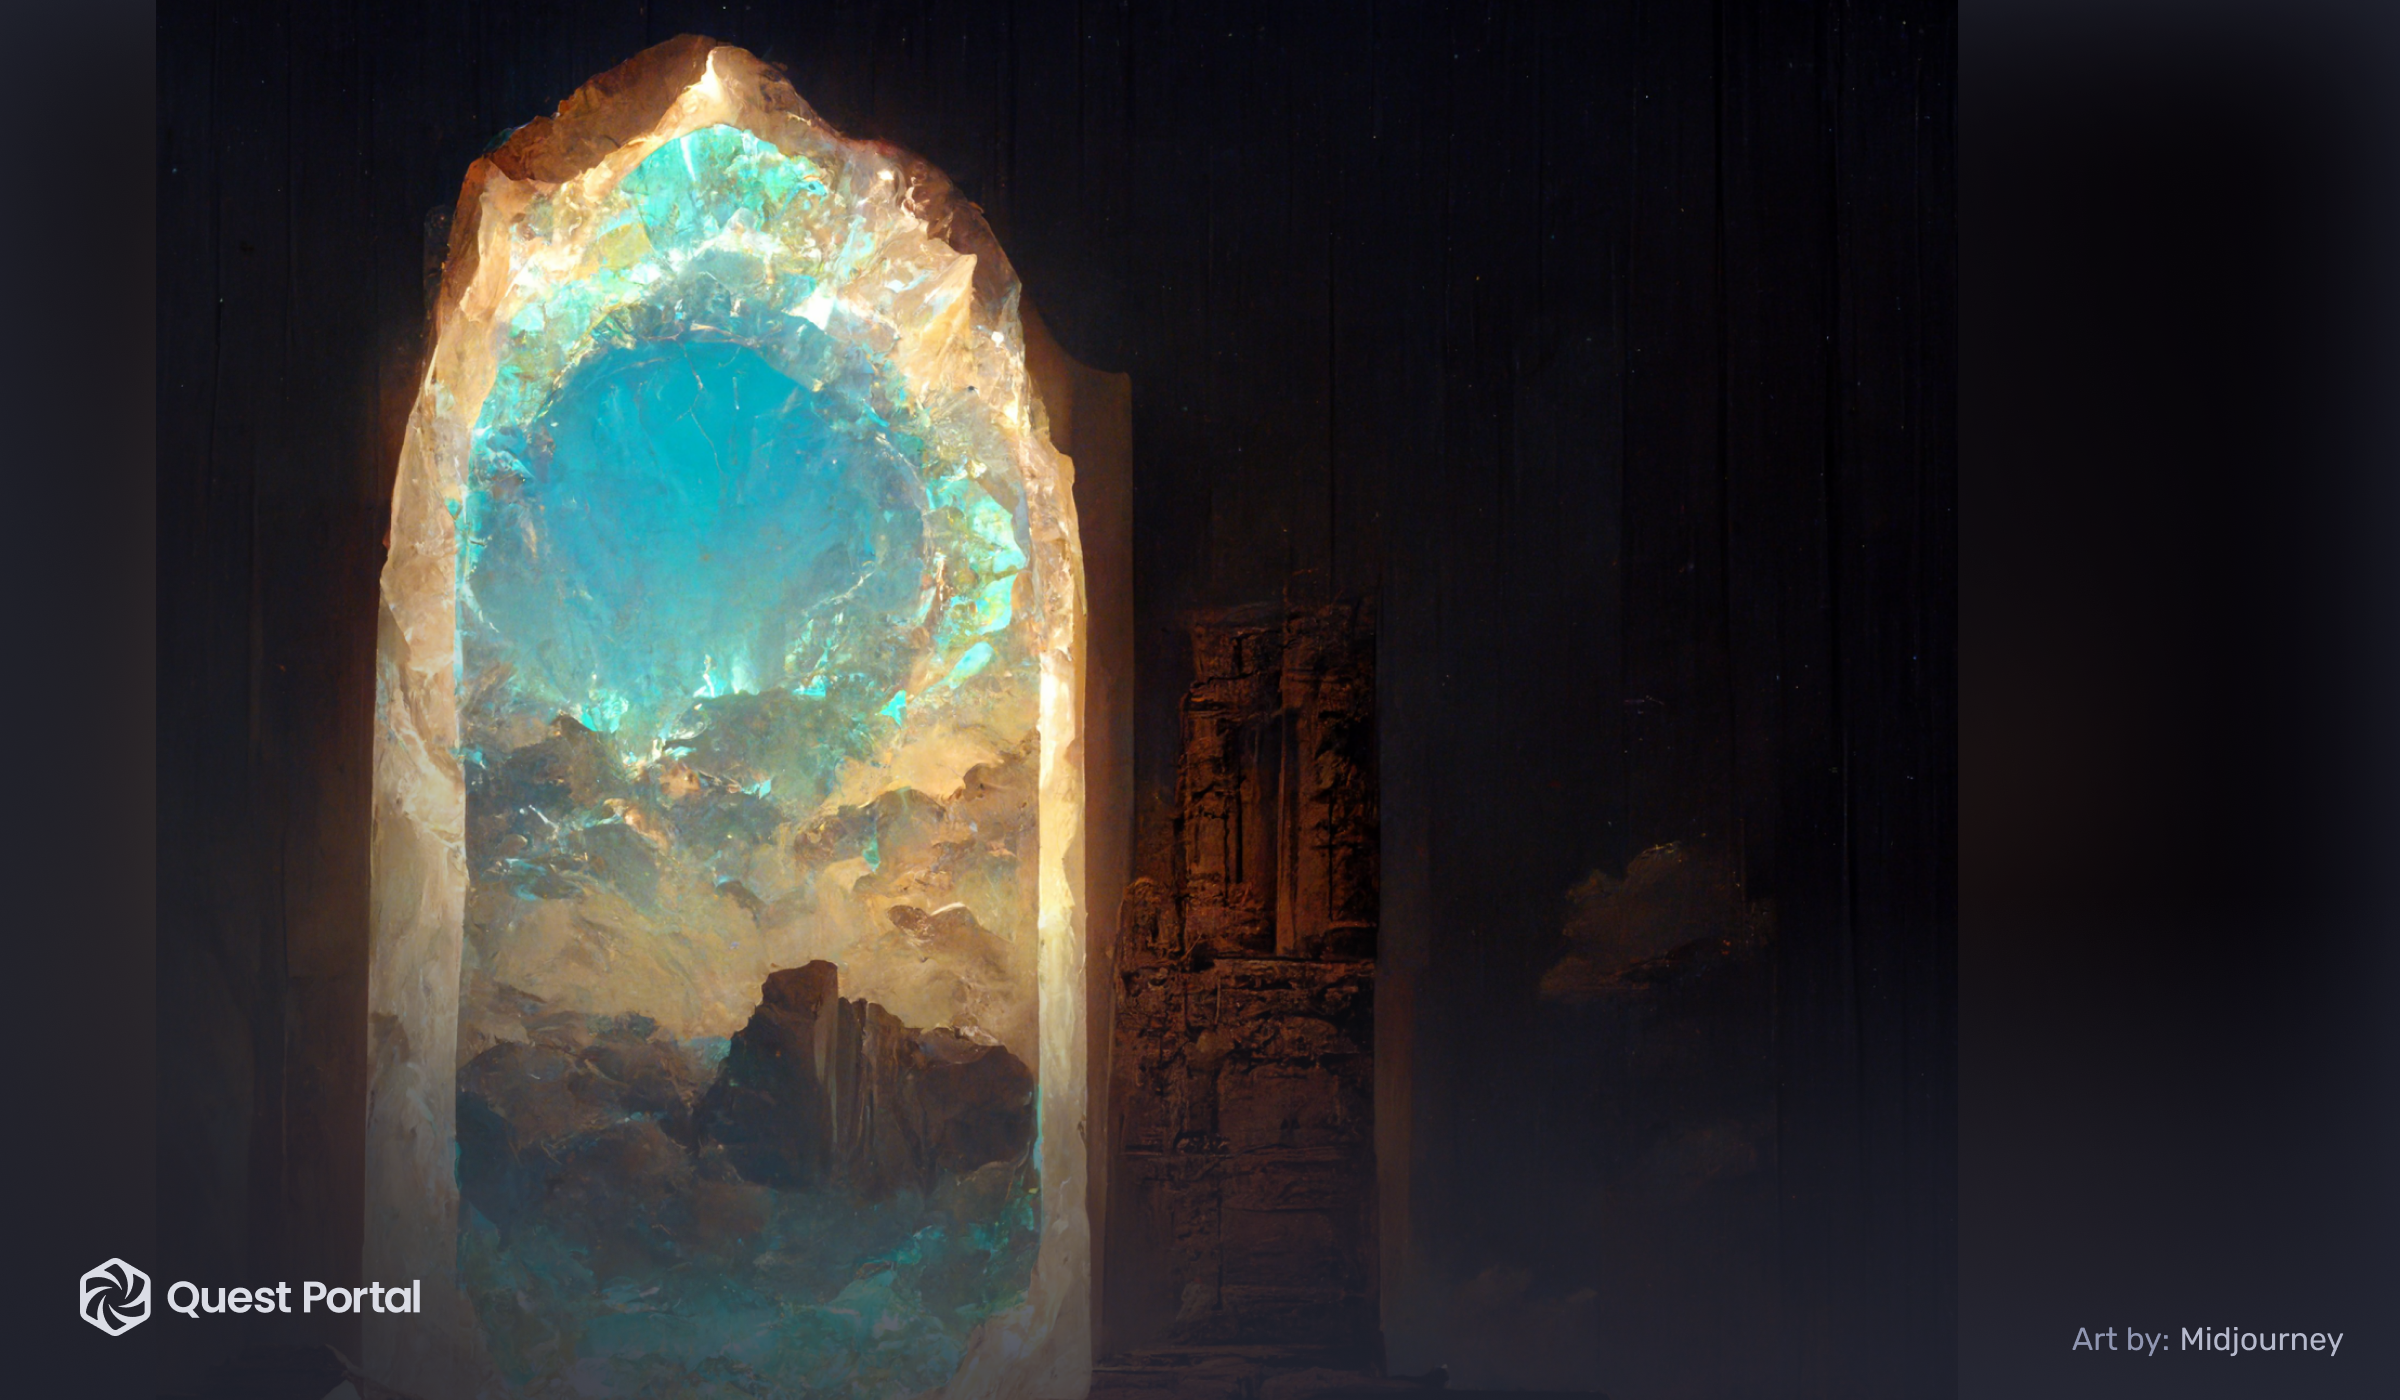 Blue skies behind a temple-like doorway portal.